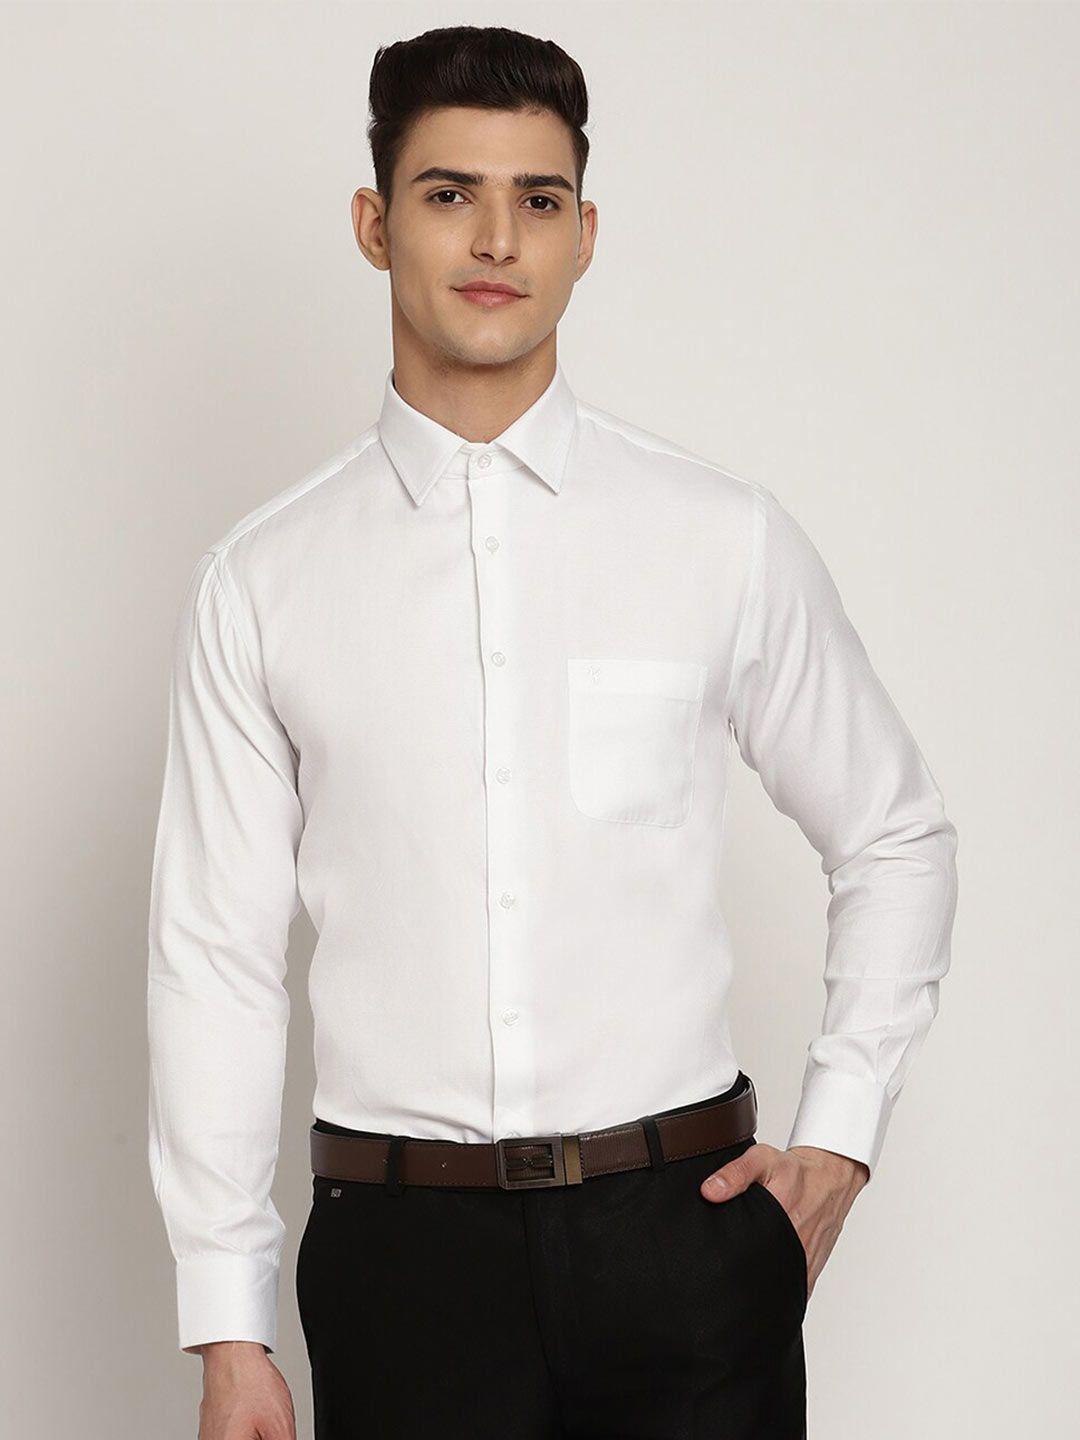 cantabil men white formal shirt